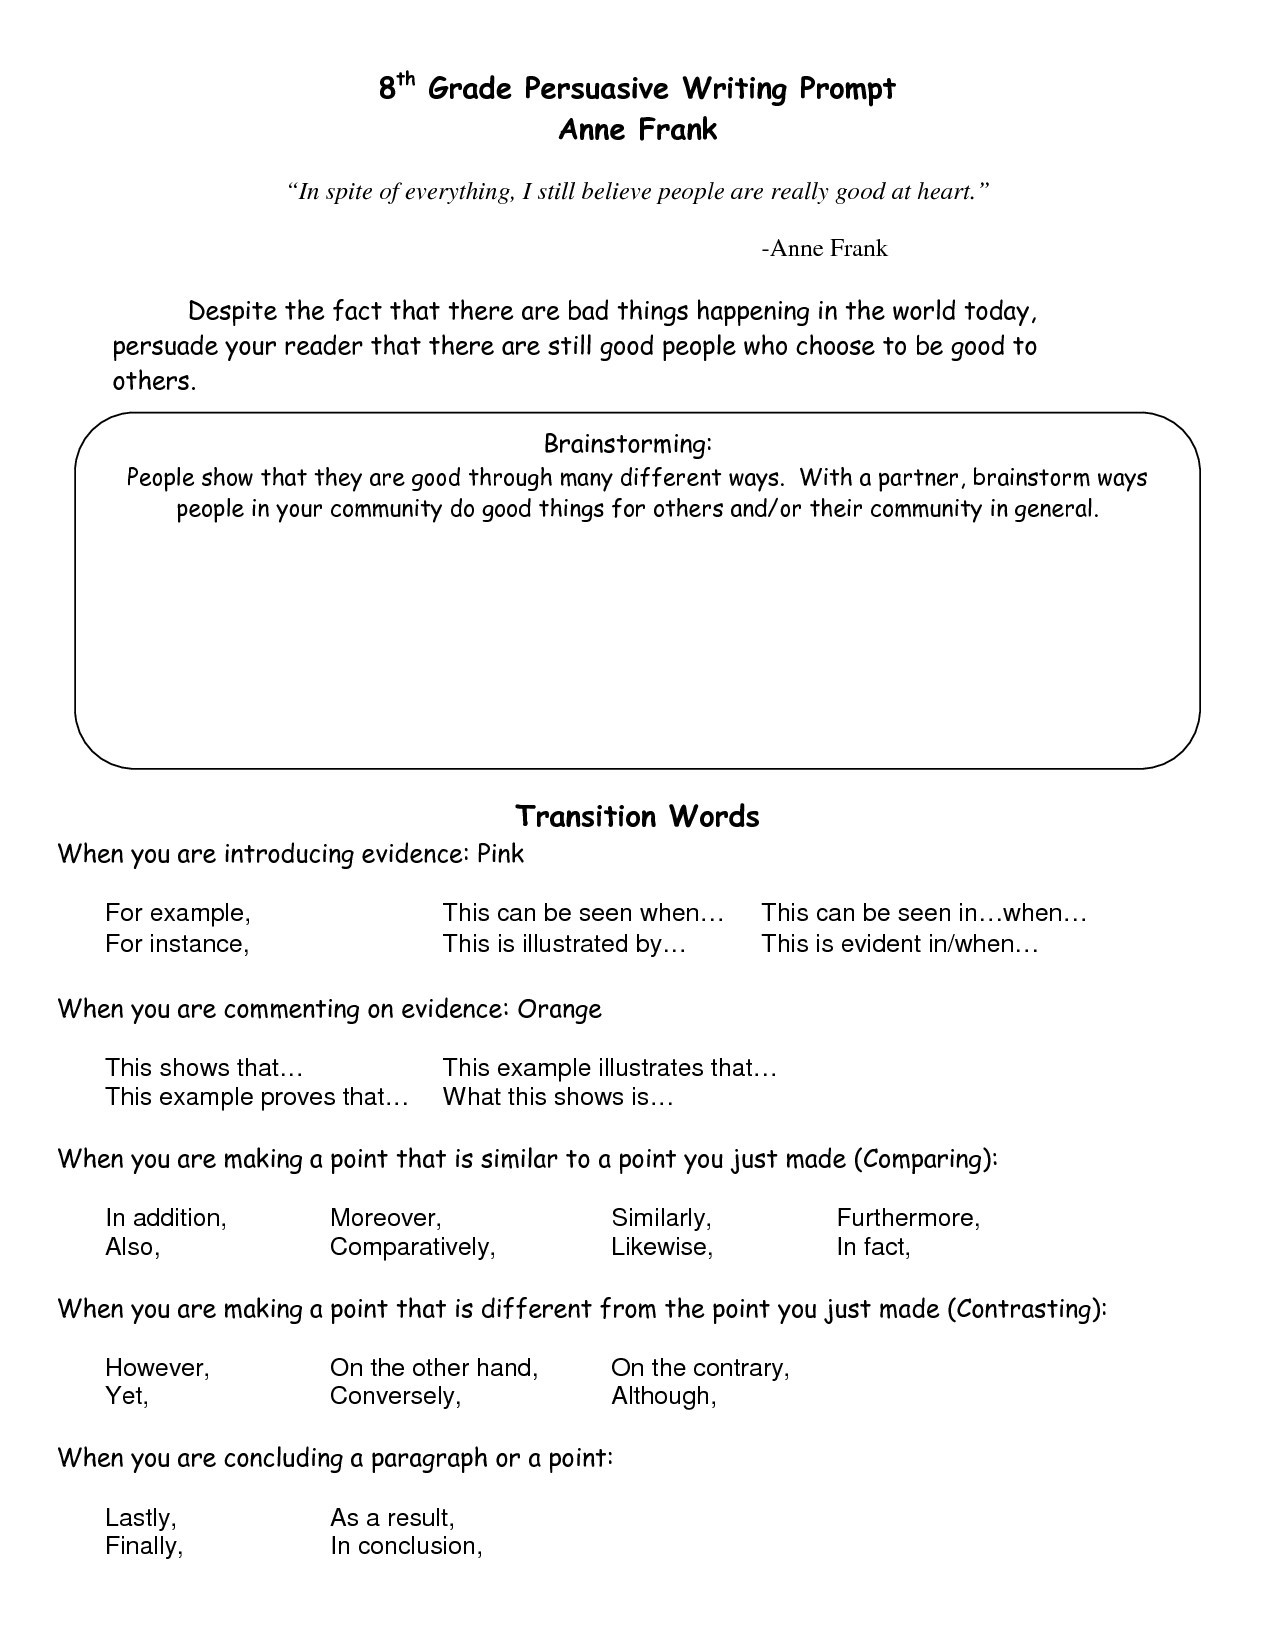 Transition Words Worksheets 4th Grade Transition Words Worksheet